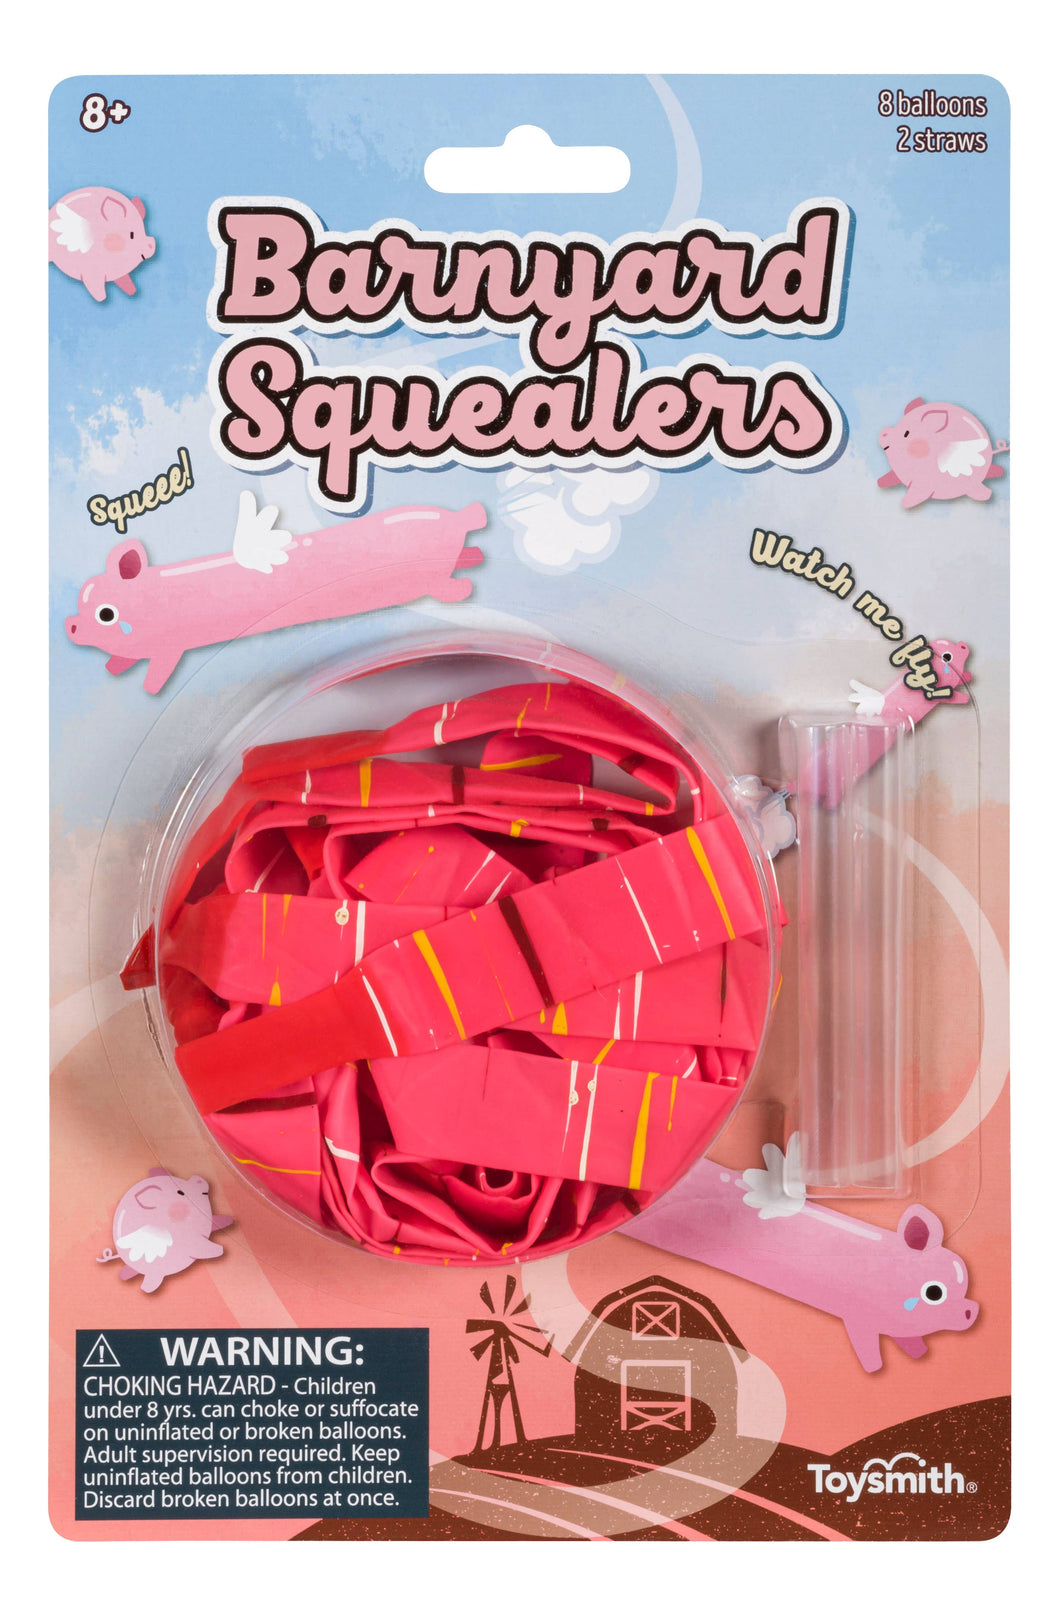 Squeal & Fly Barnyard Squealer Balloons